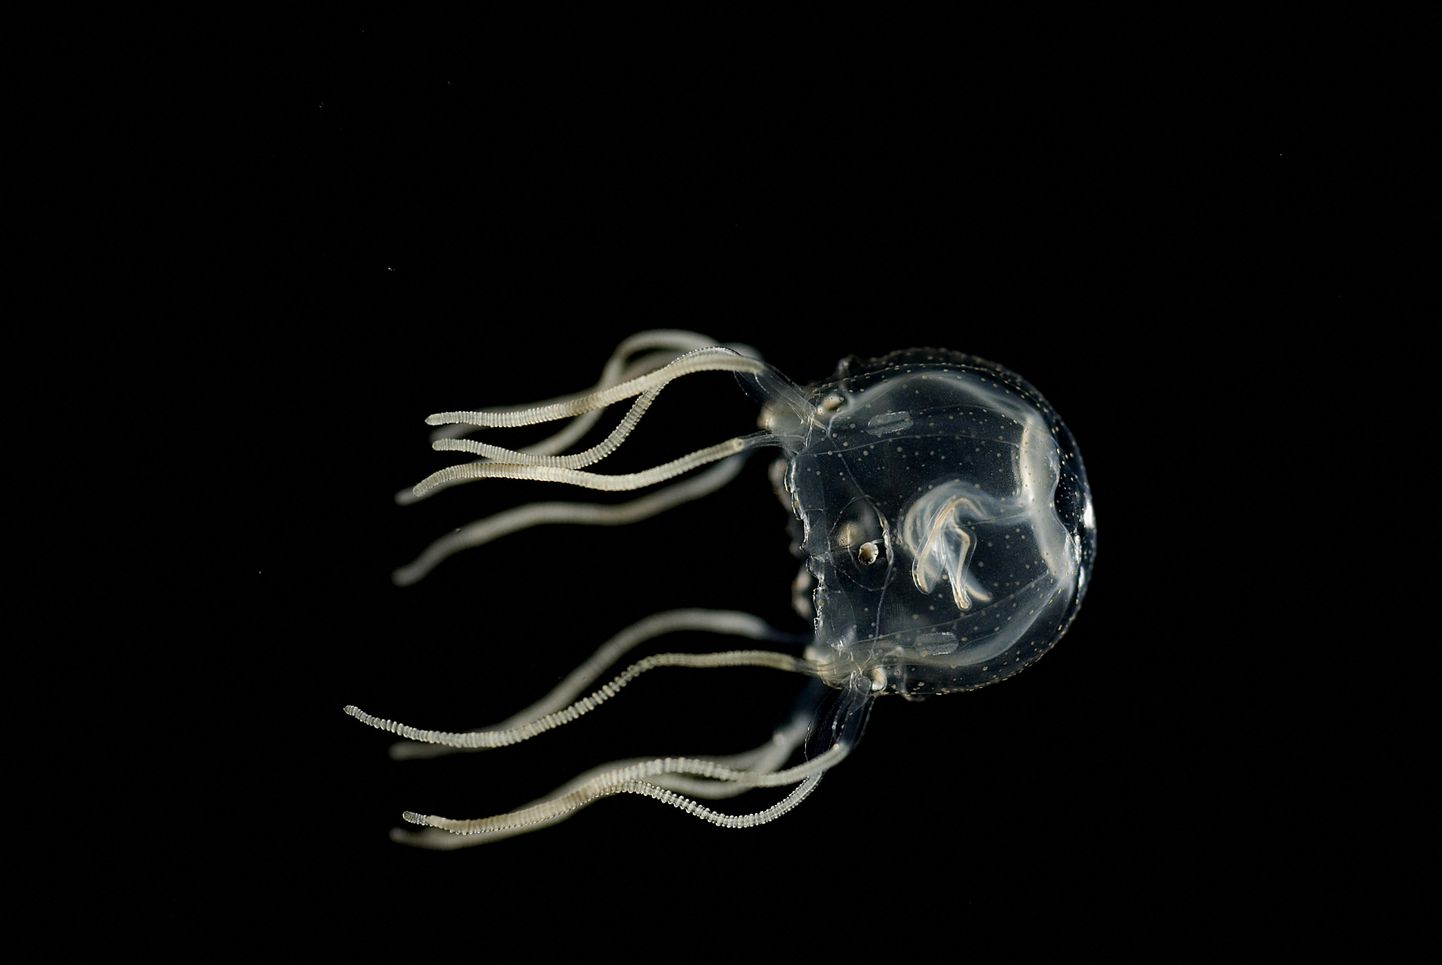 Tripedalia cystophora on üllatavate oskustega meduus